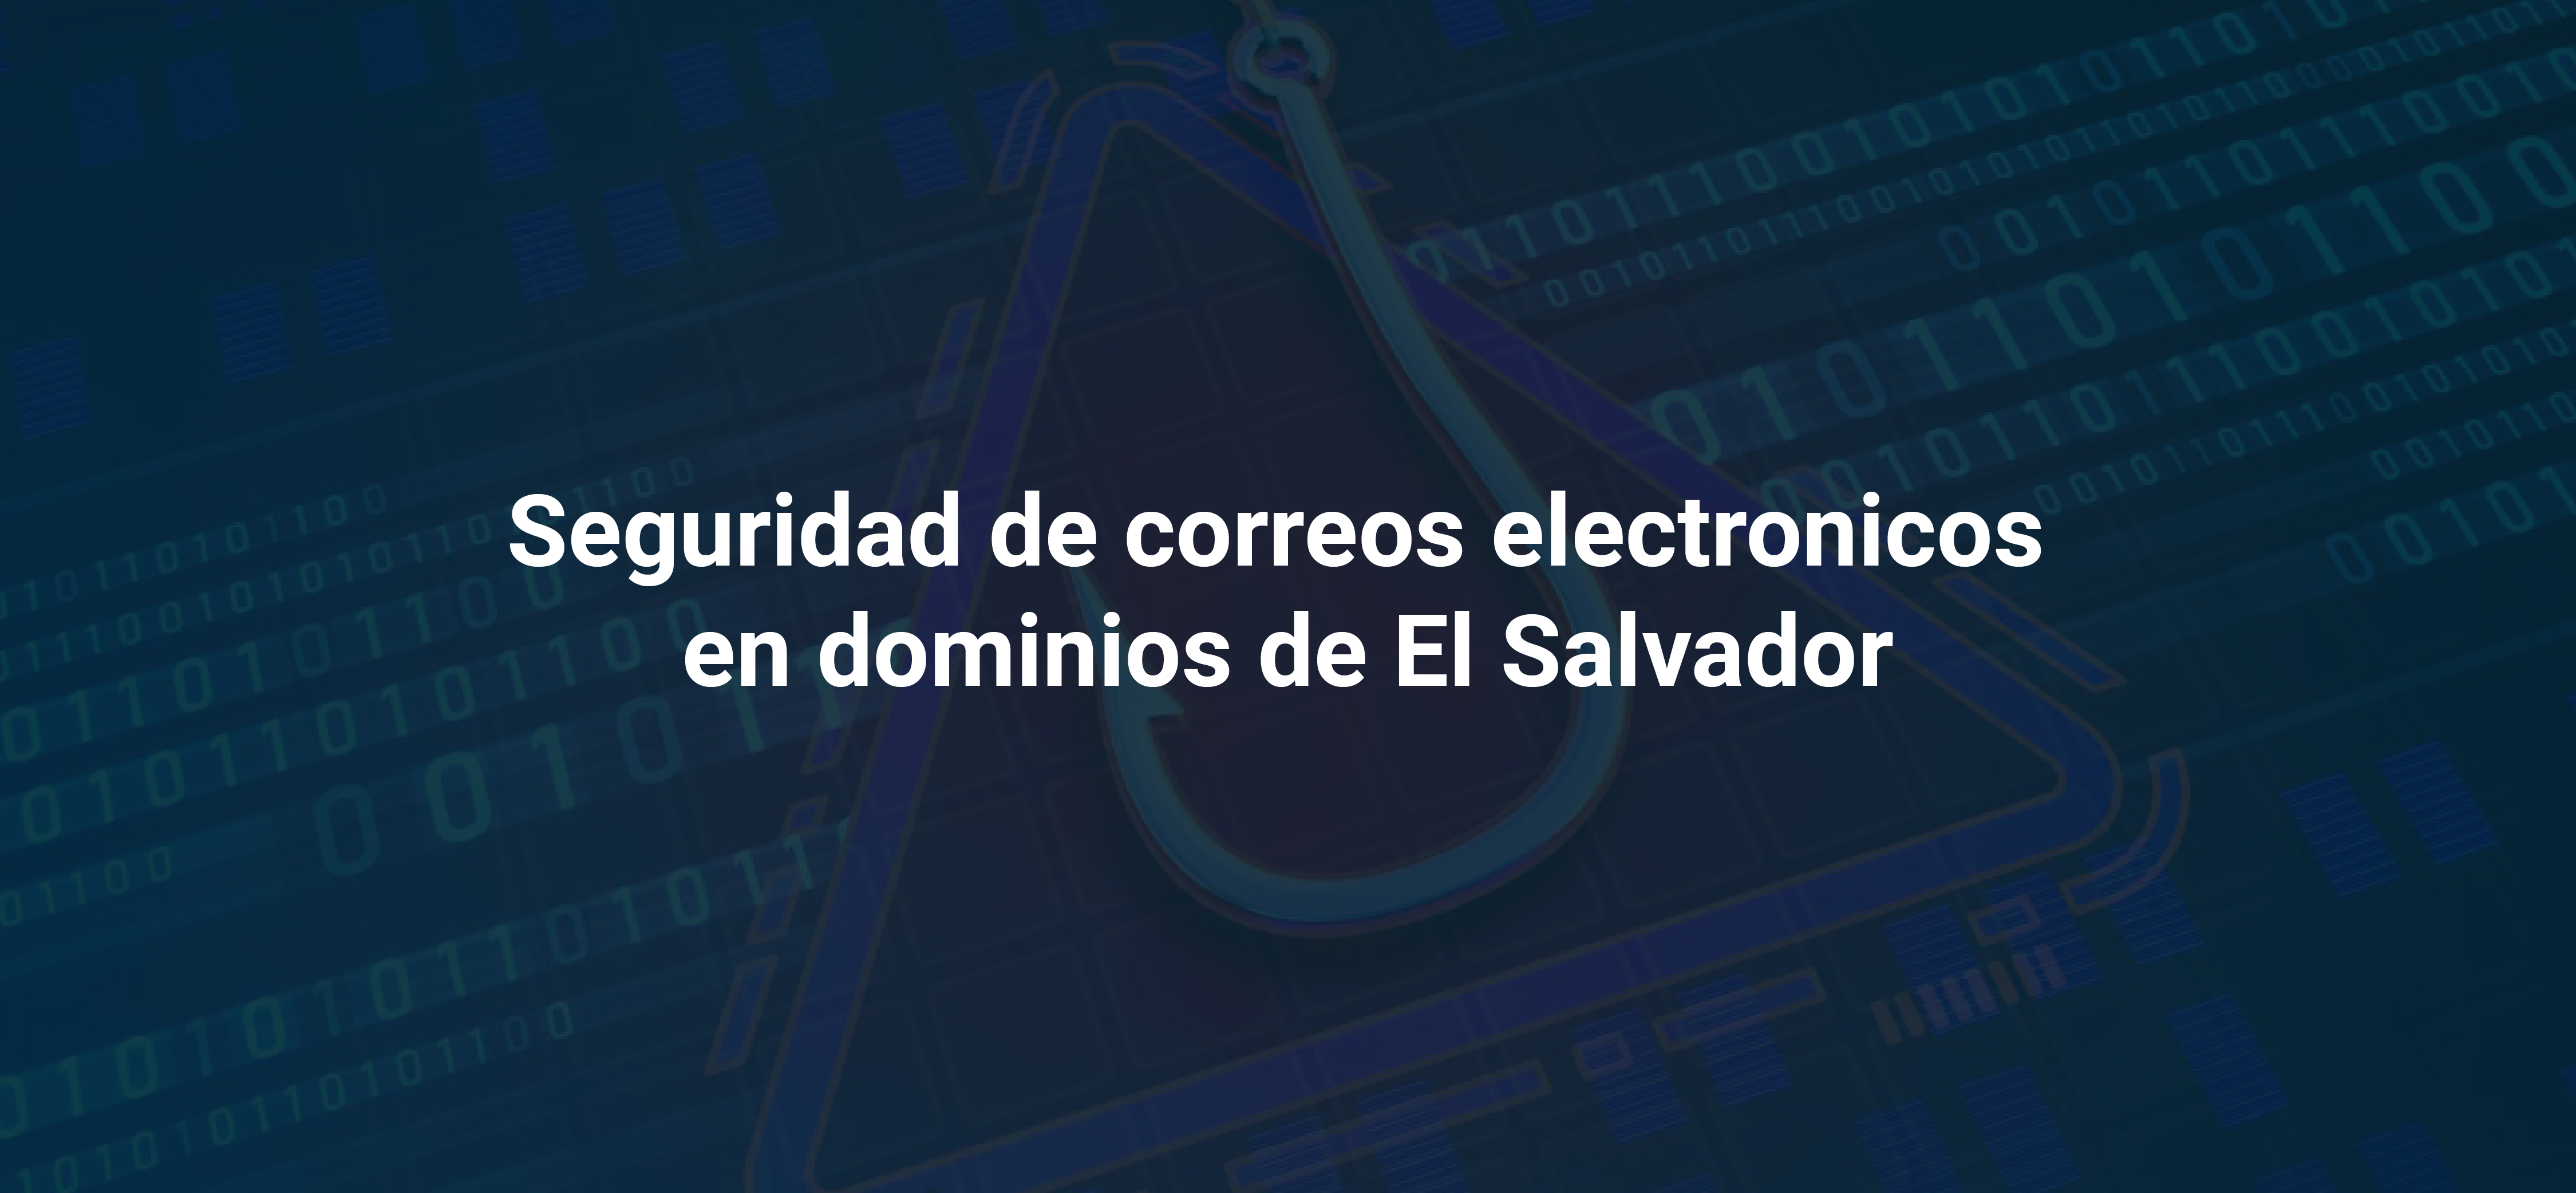 Seguridad de correo electronico en dominios de El Salvador